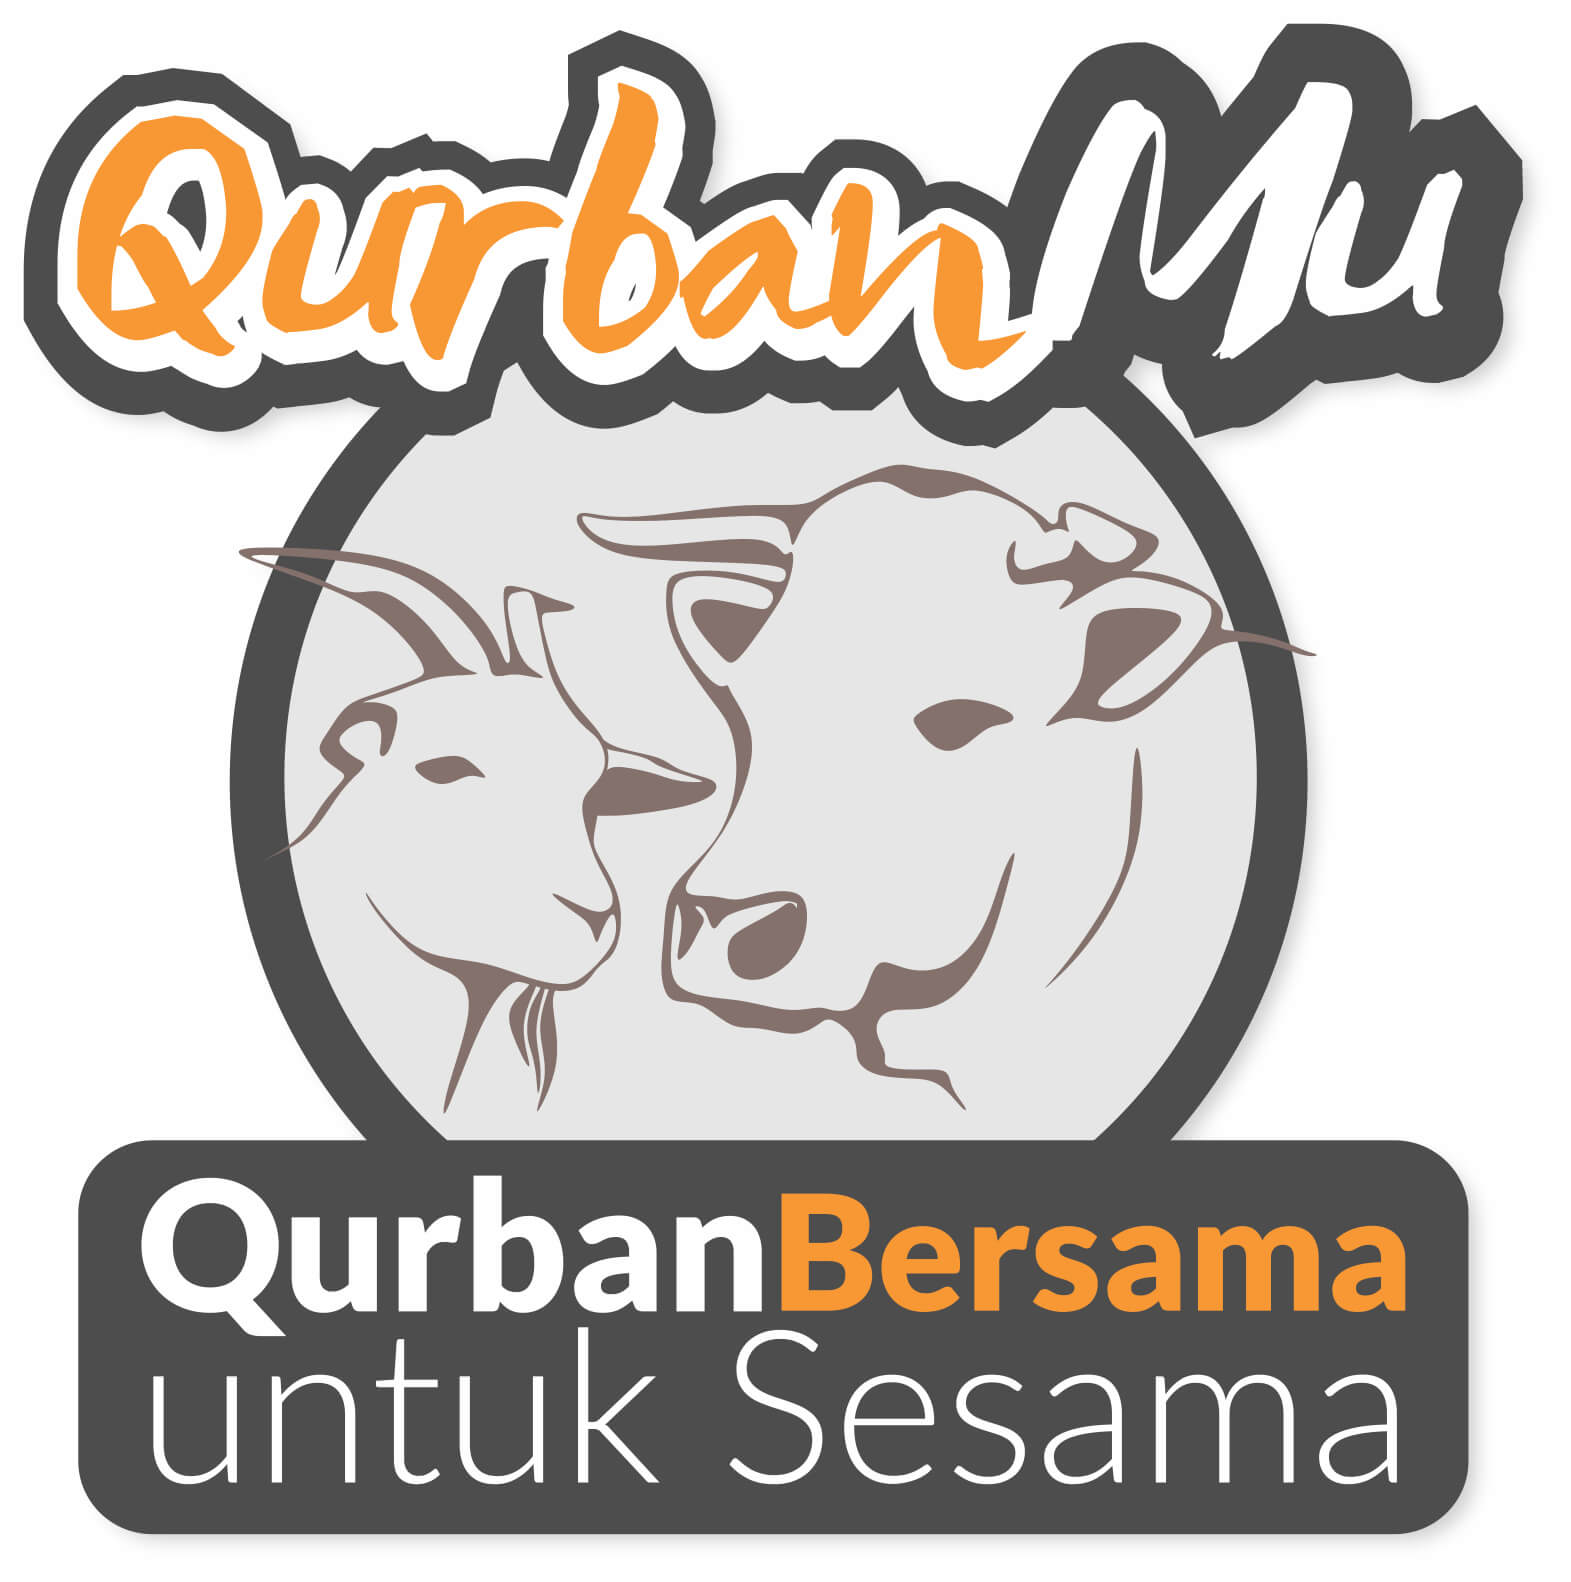 Qurbanmu